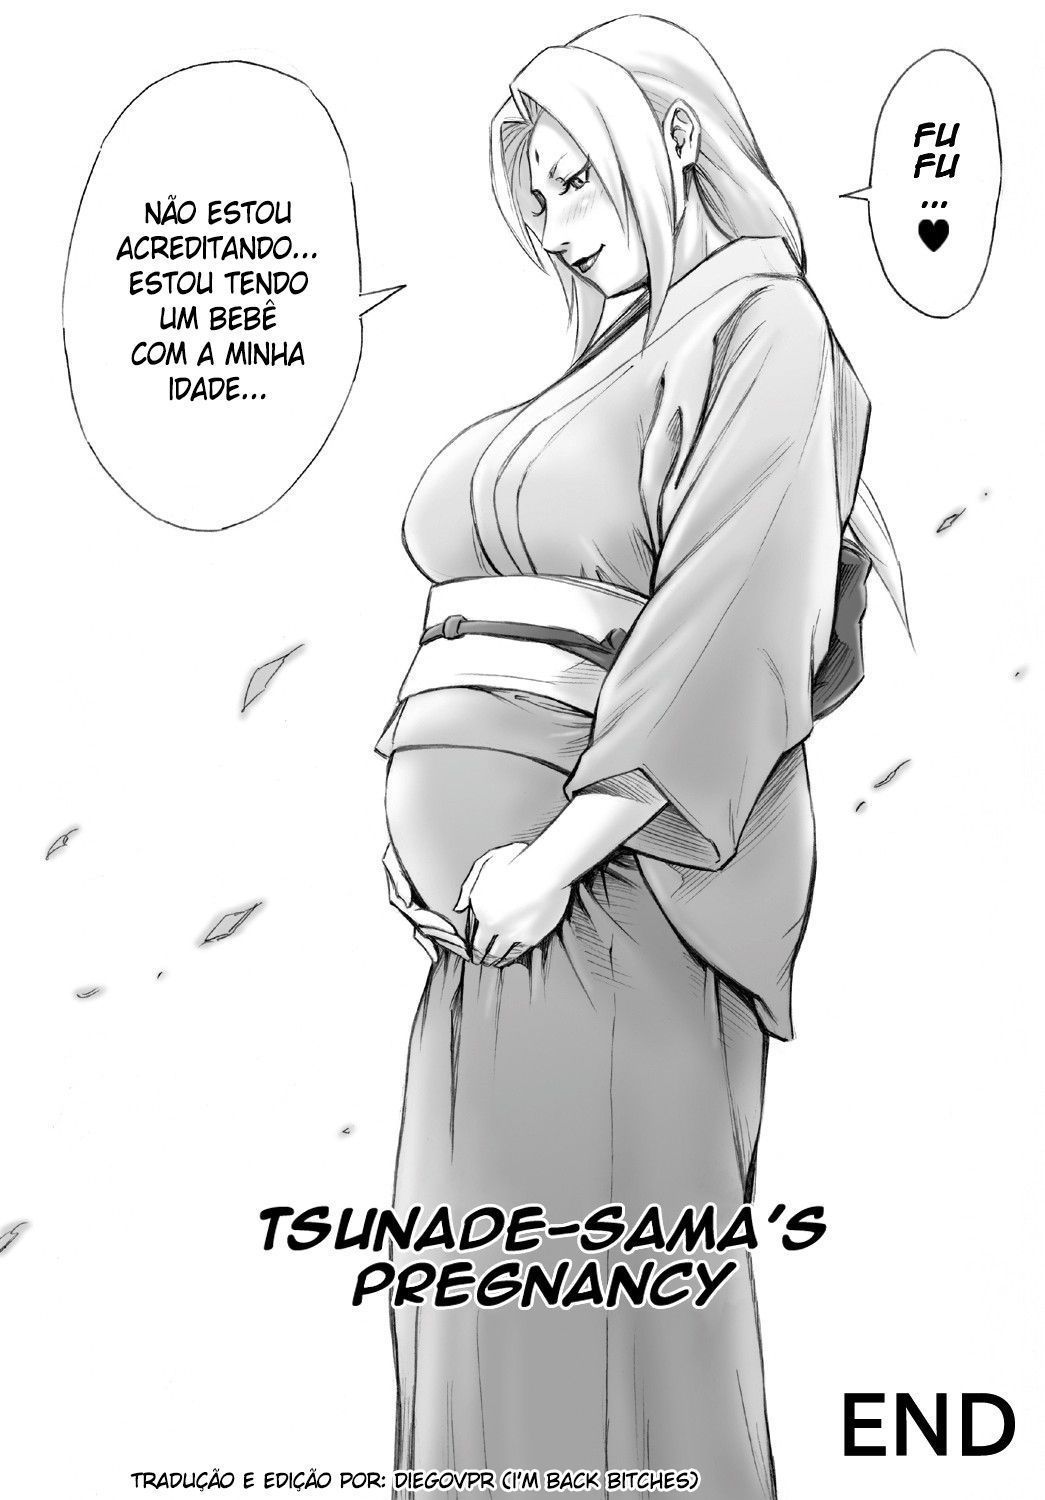 Eu quero um bebê da Tsunade!